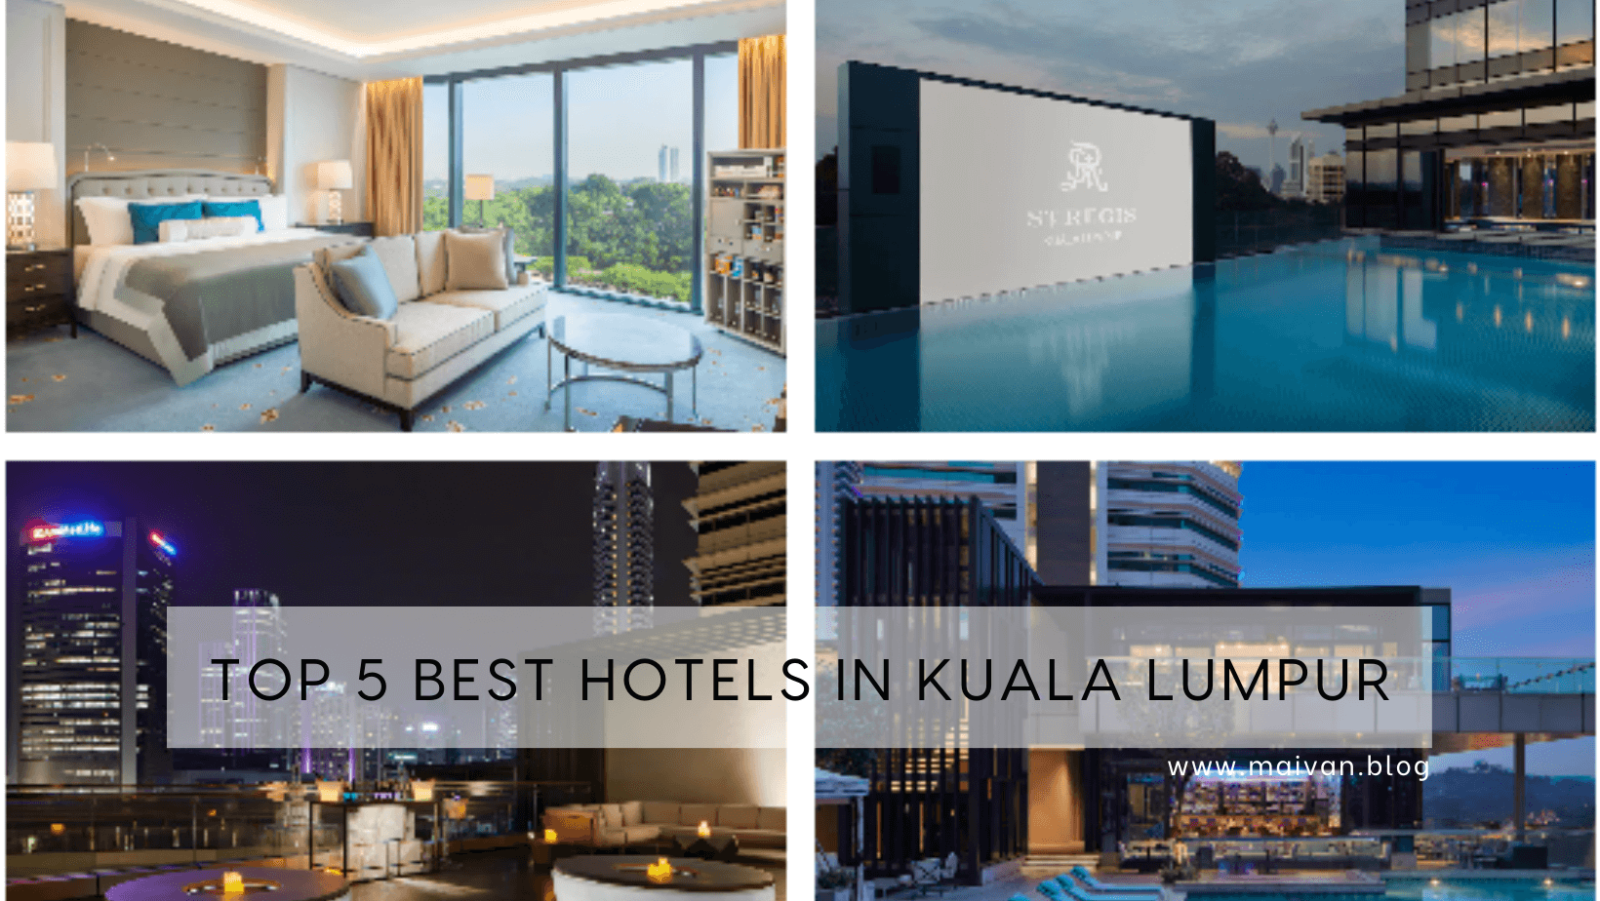 Top 5 Best Hotels In Kuala Lumpur, Malaysia